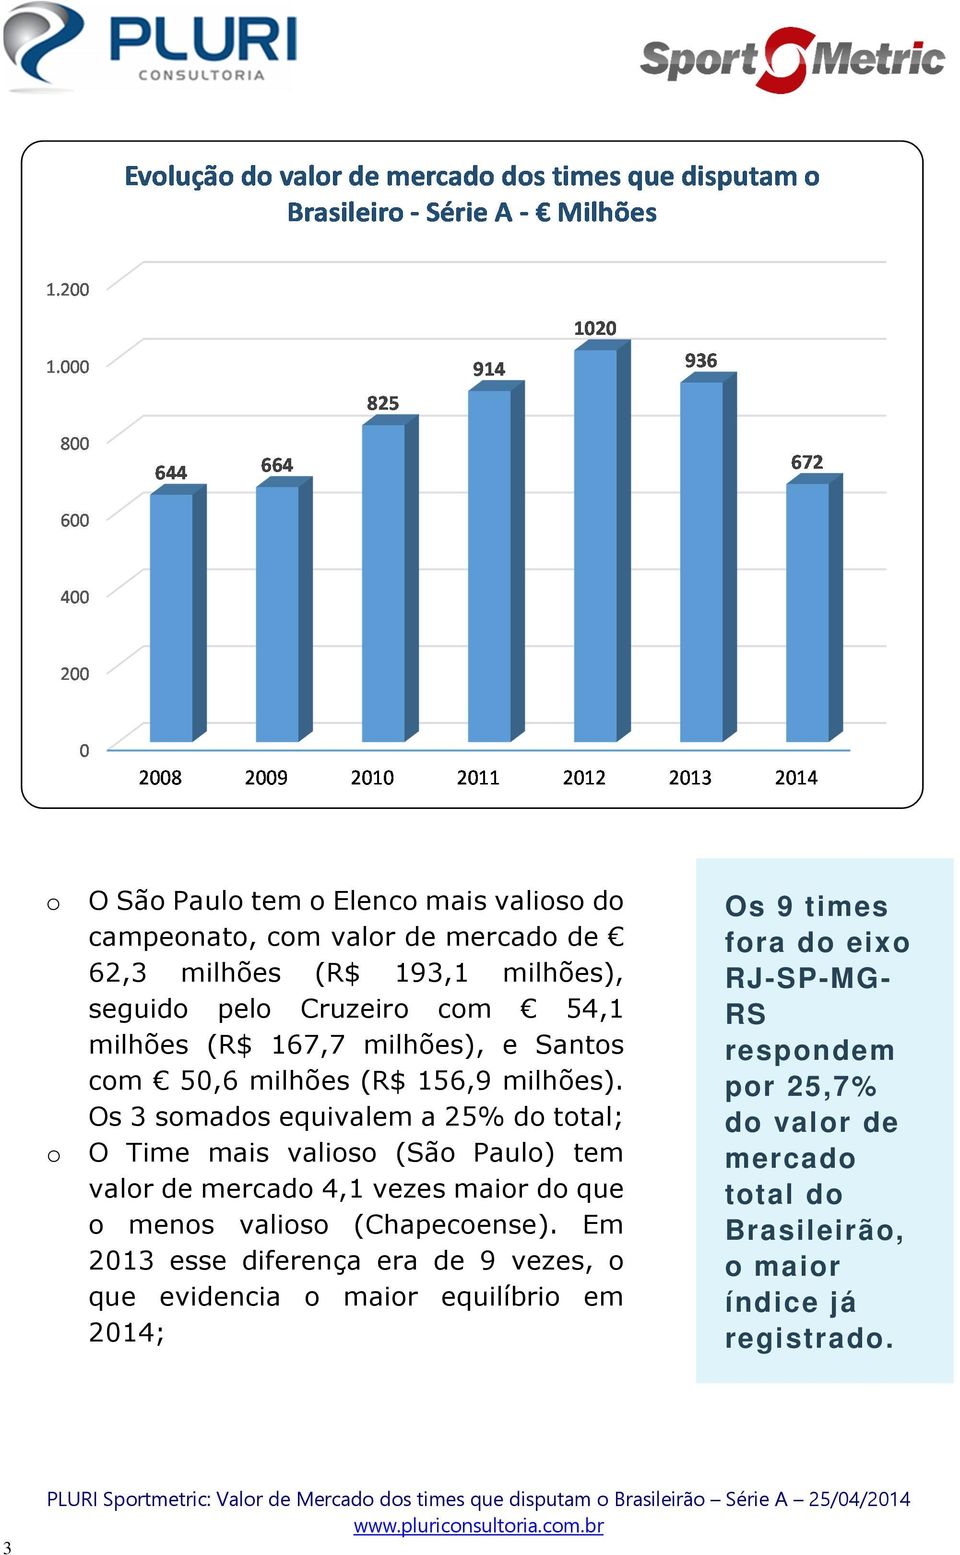 Os 3 somados equivalem a 25% do total; o O Time mais valioso (São Paulo) tem valor de mercado 4,1 vezes maior do que o menos valioso